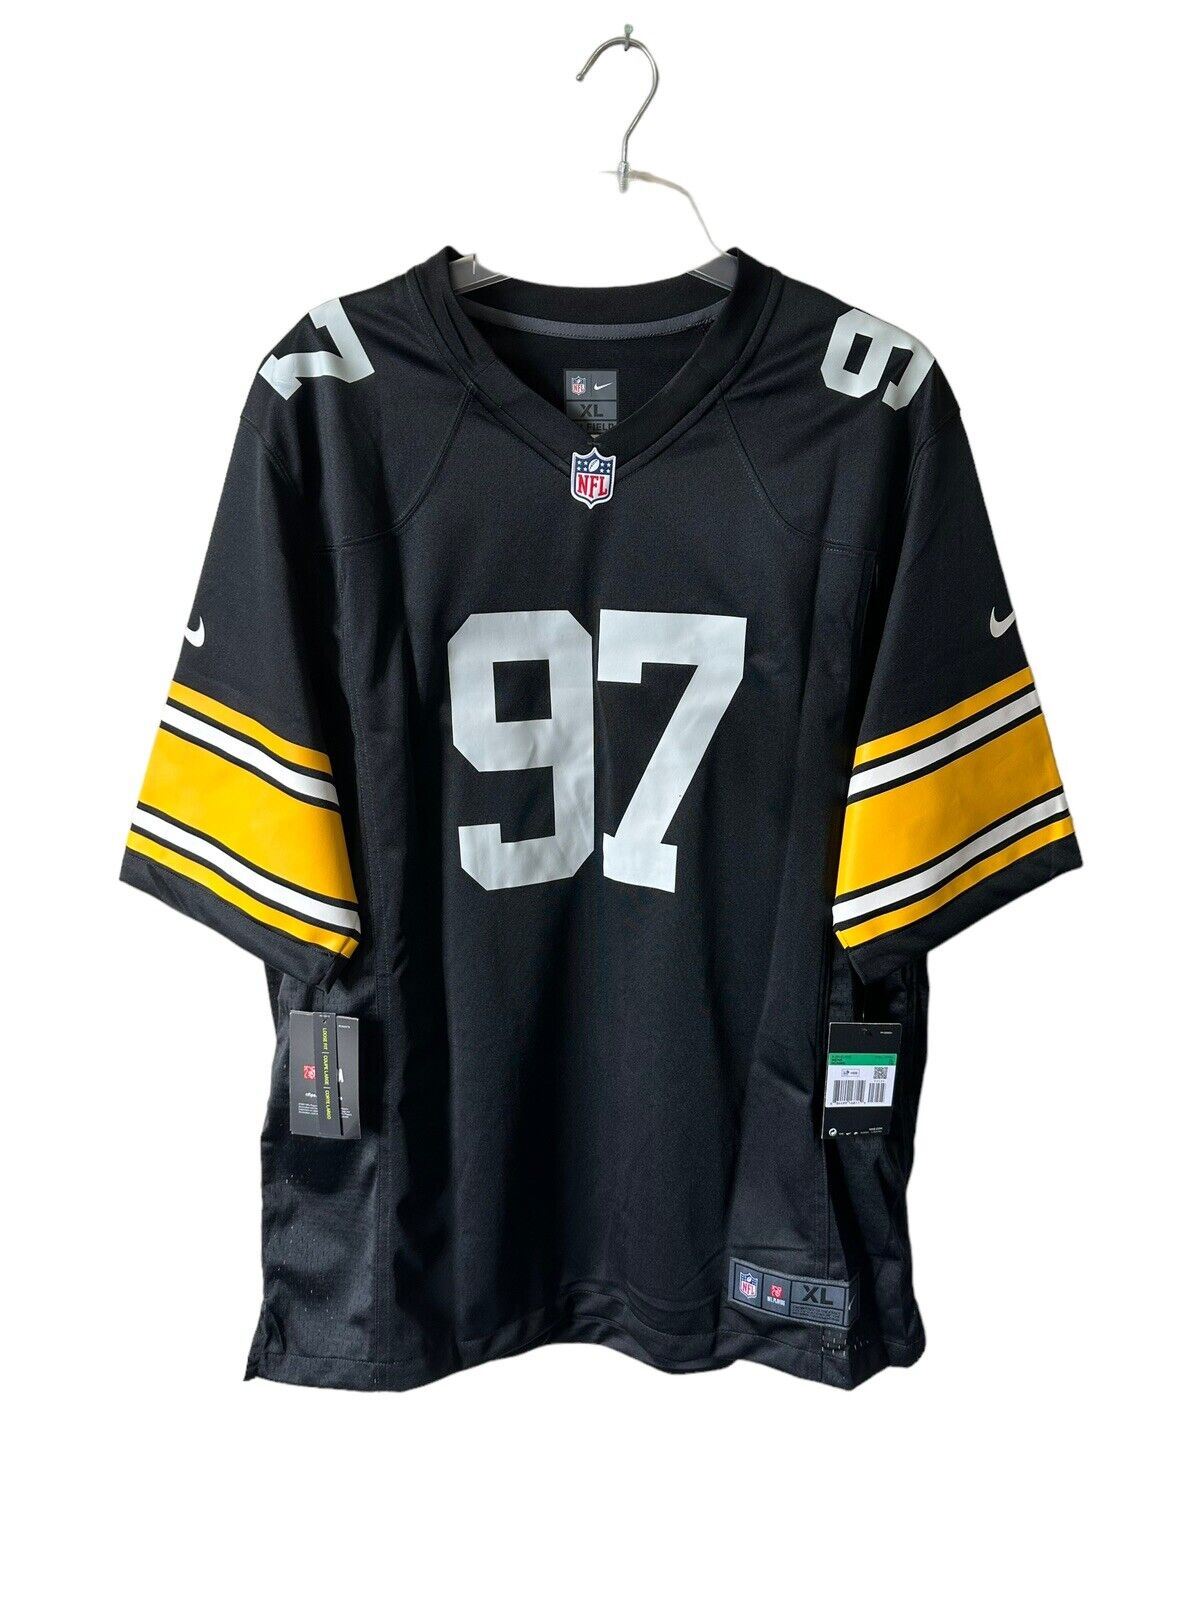 Nike NFL Pittsburgh Steelers Game Jersey HEYWARD Mens XL